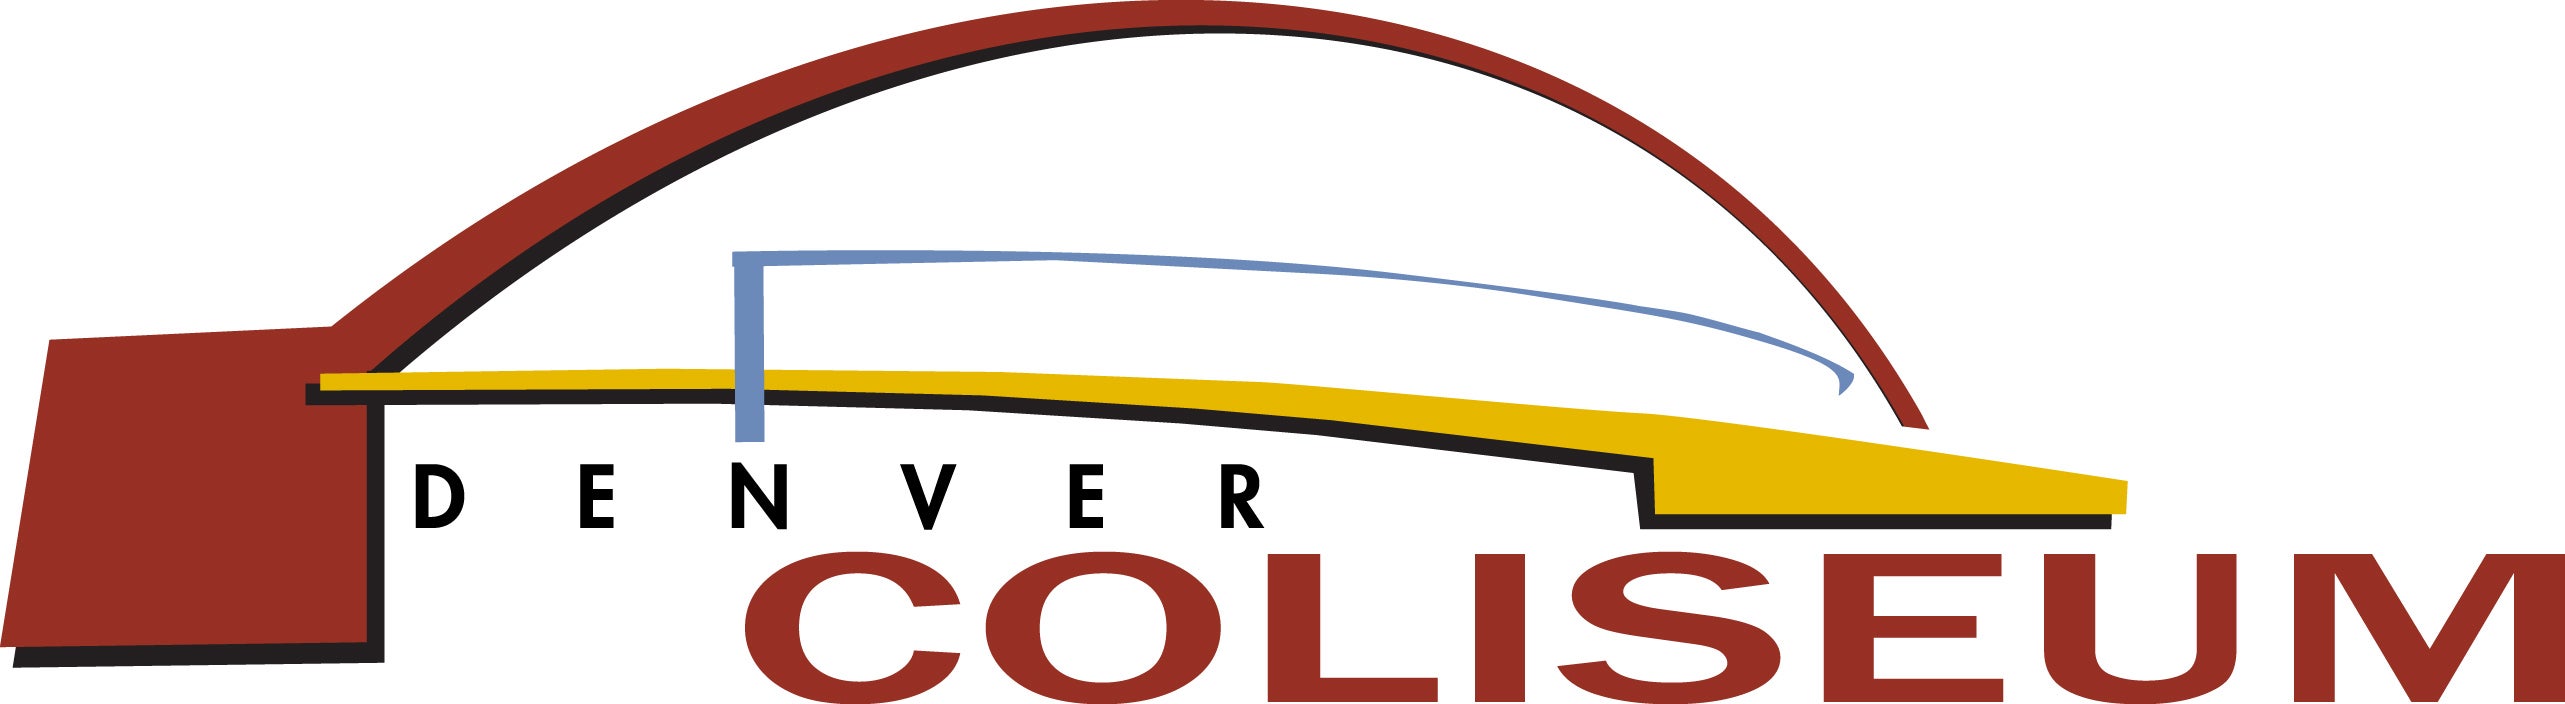 Denver Coliseum Logo Print.jpg